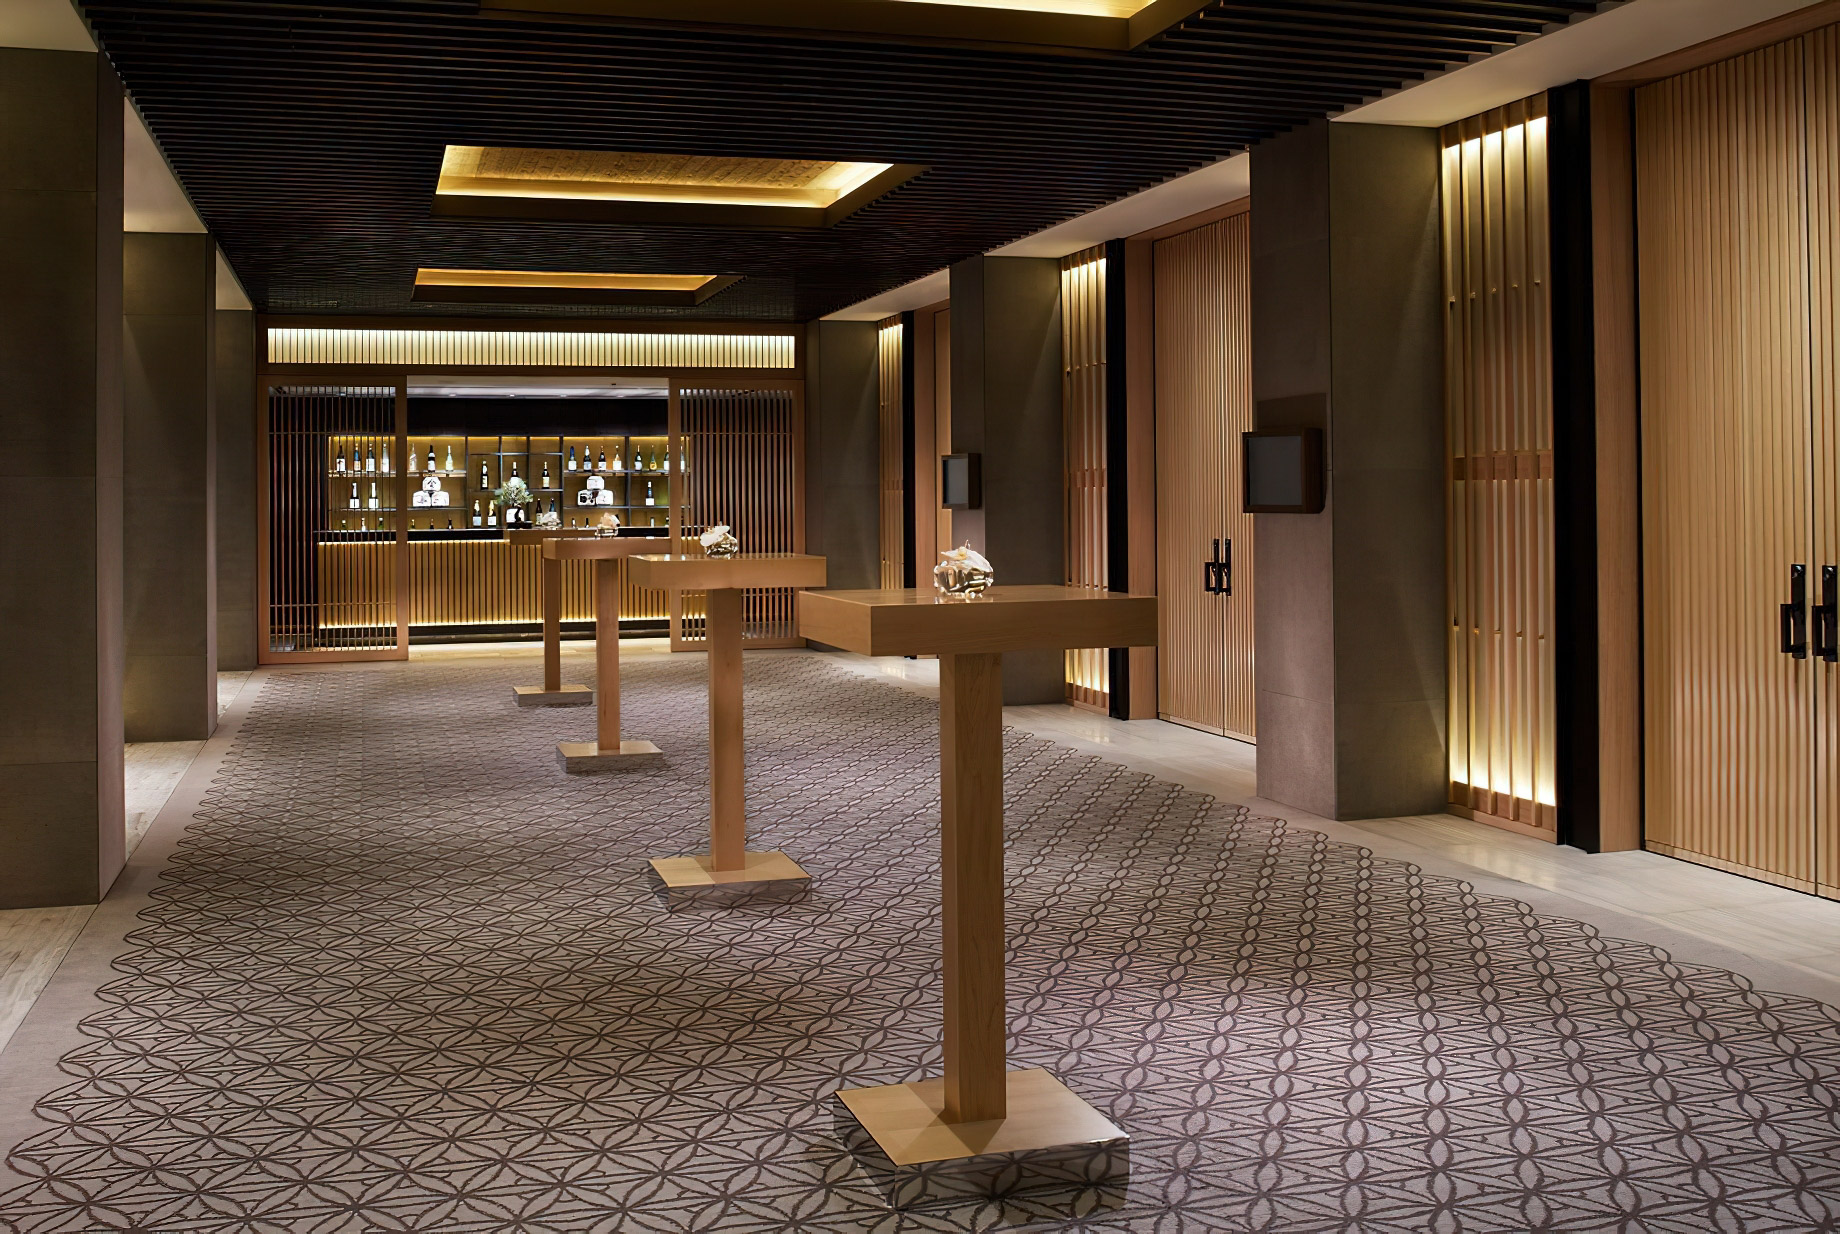 The Ritz-Carlton, Kyoto Hotel – Nakagyo Ward, Kyoto, Japan – Banquest and Meeting Room Foyer